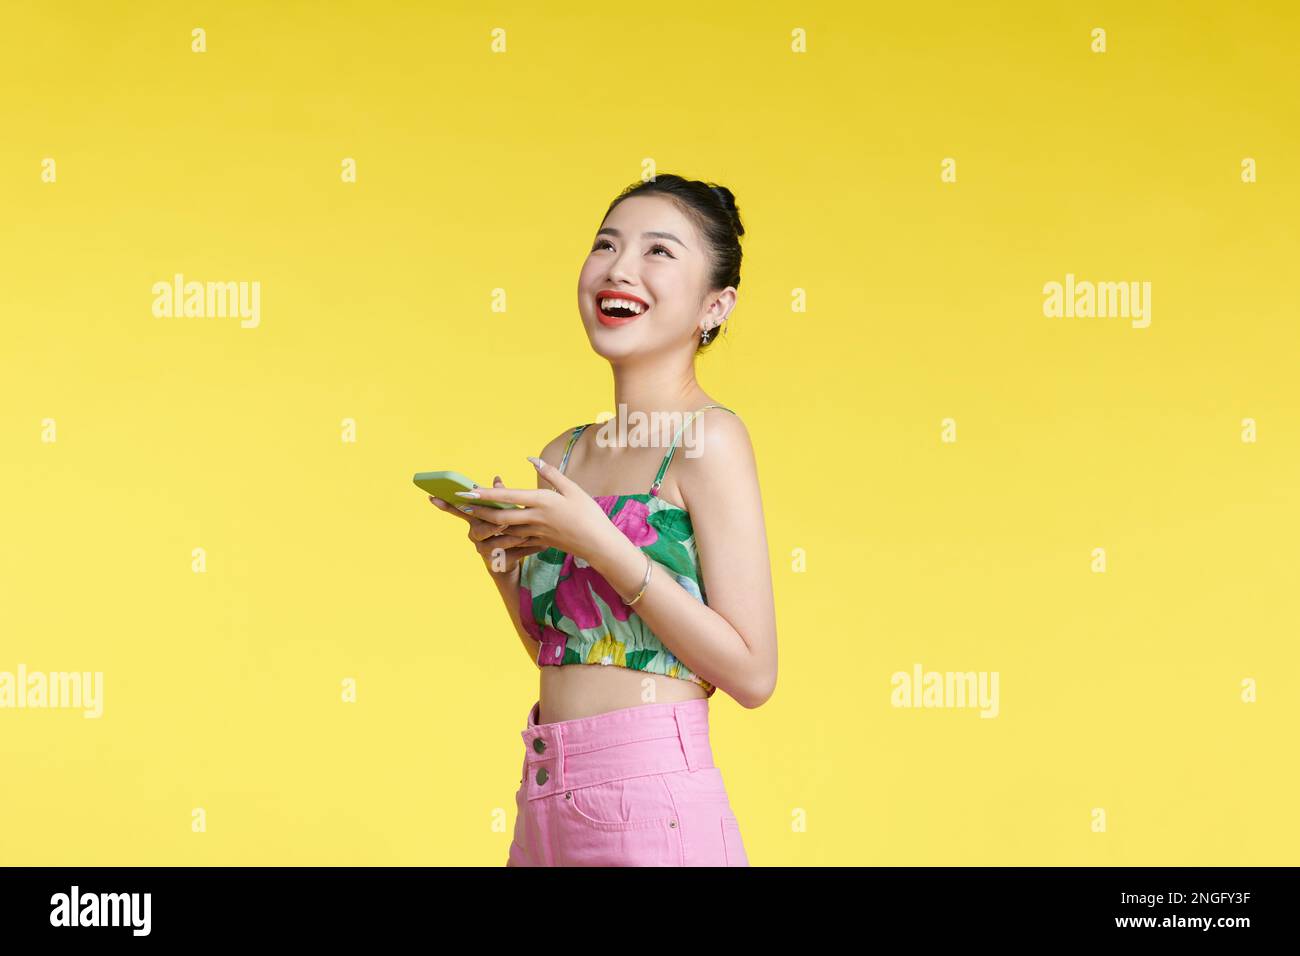 Foto di bella donna tenere telefono cellulare beaming sorriso eccitato isolato su sfondo giallo Foto Stock